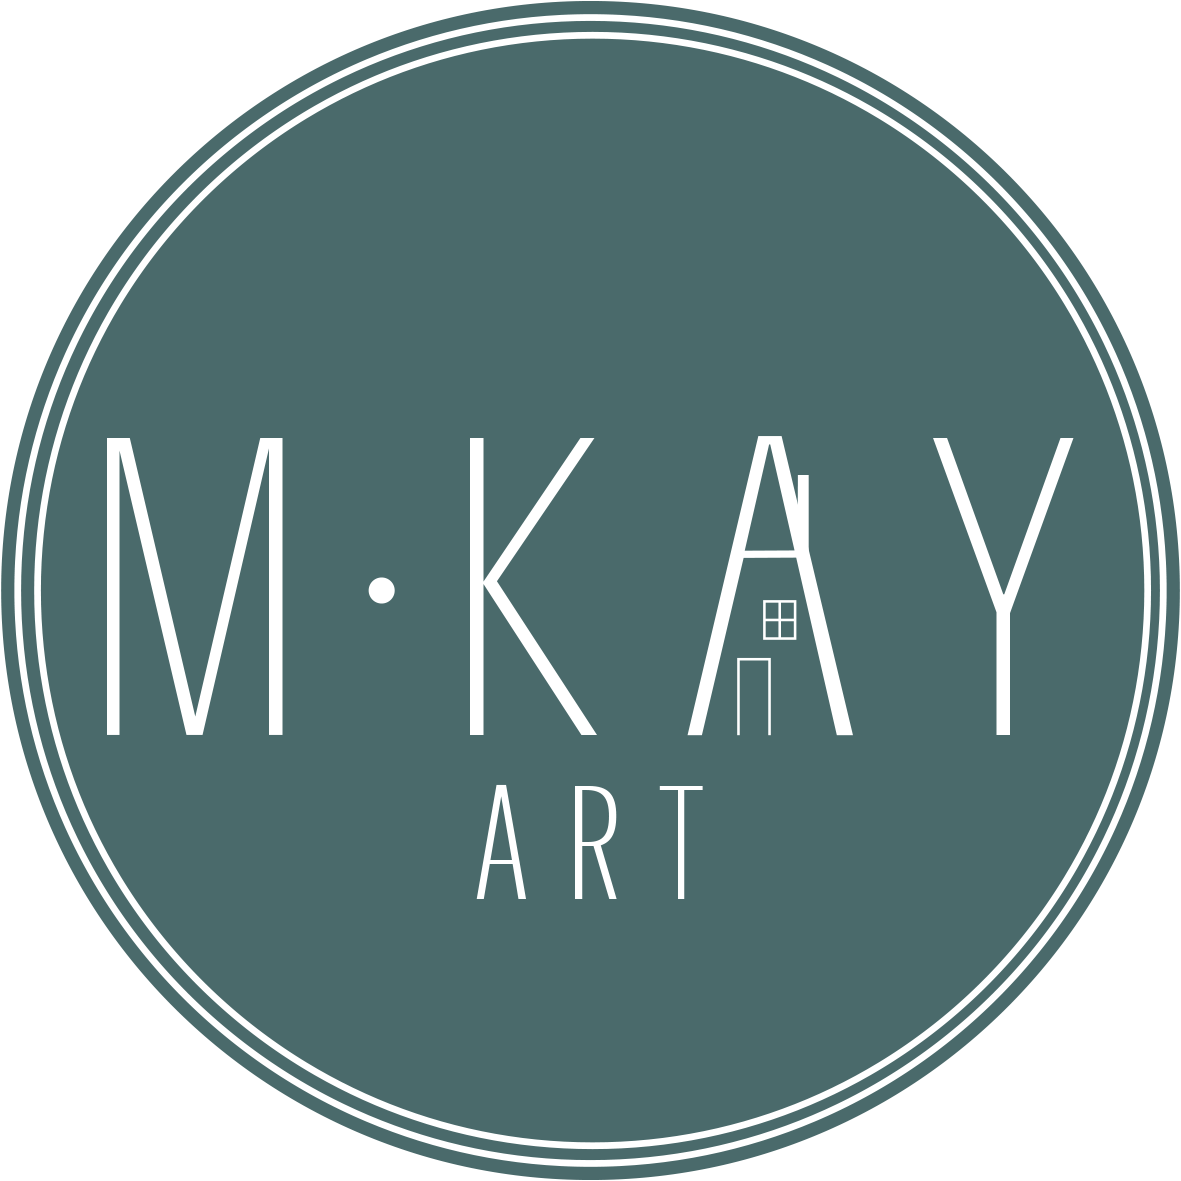 MKay art